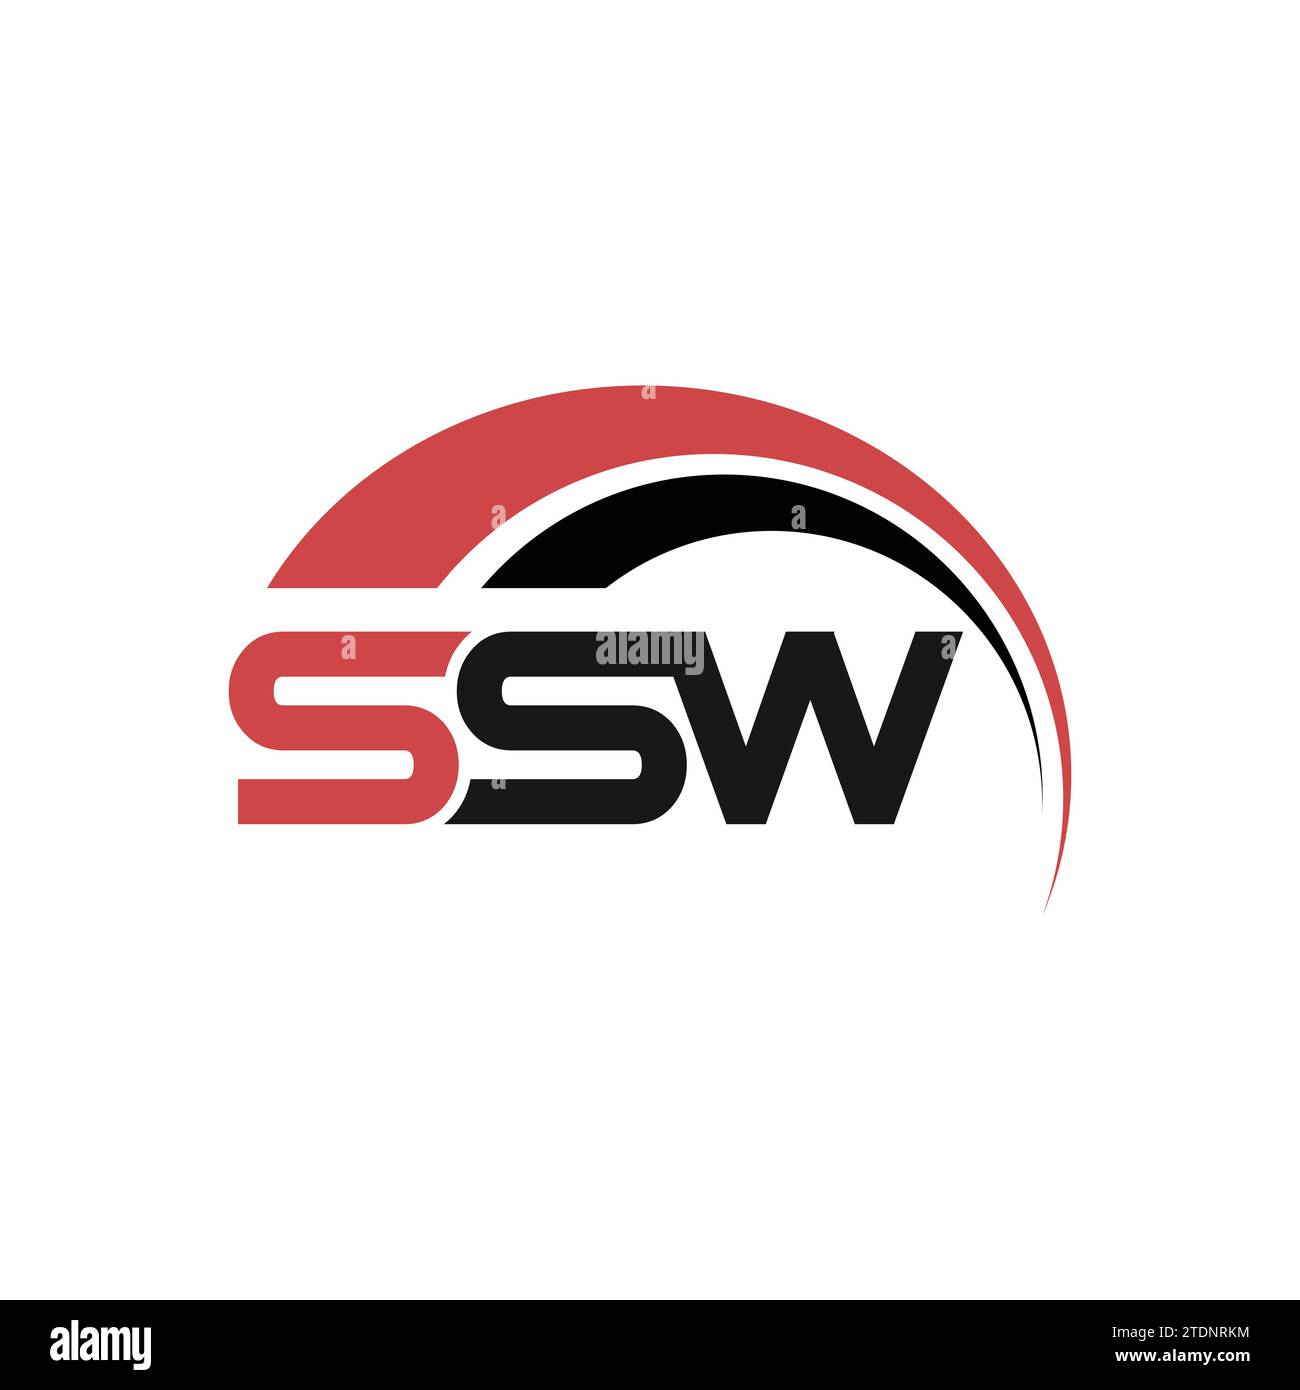 Conception de logo de lettre SSW dans l'illustration. Logo vectoriel, conceptions de calligraphie pour logo. Conception de logo de lettre SSW avec fond blanc dans Illustrator. Illustration de Vecteur